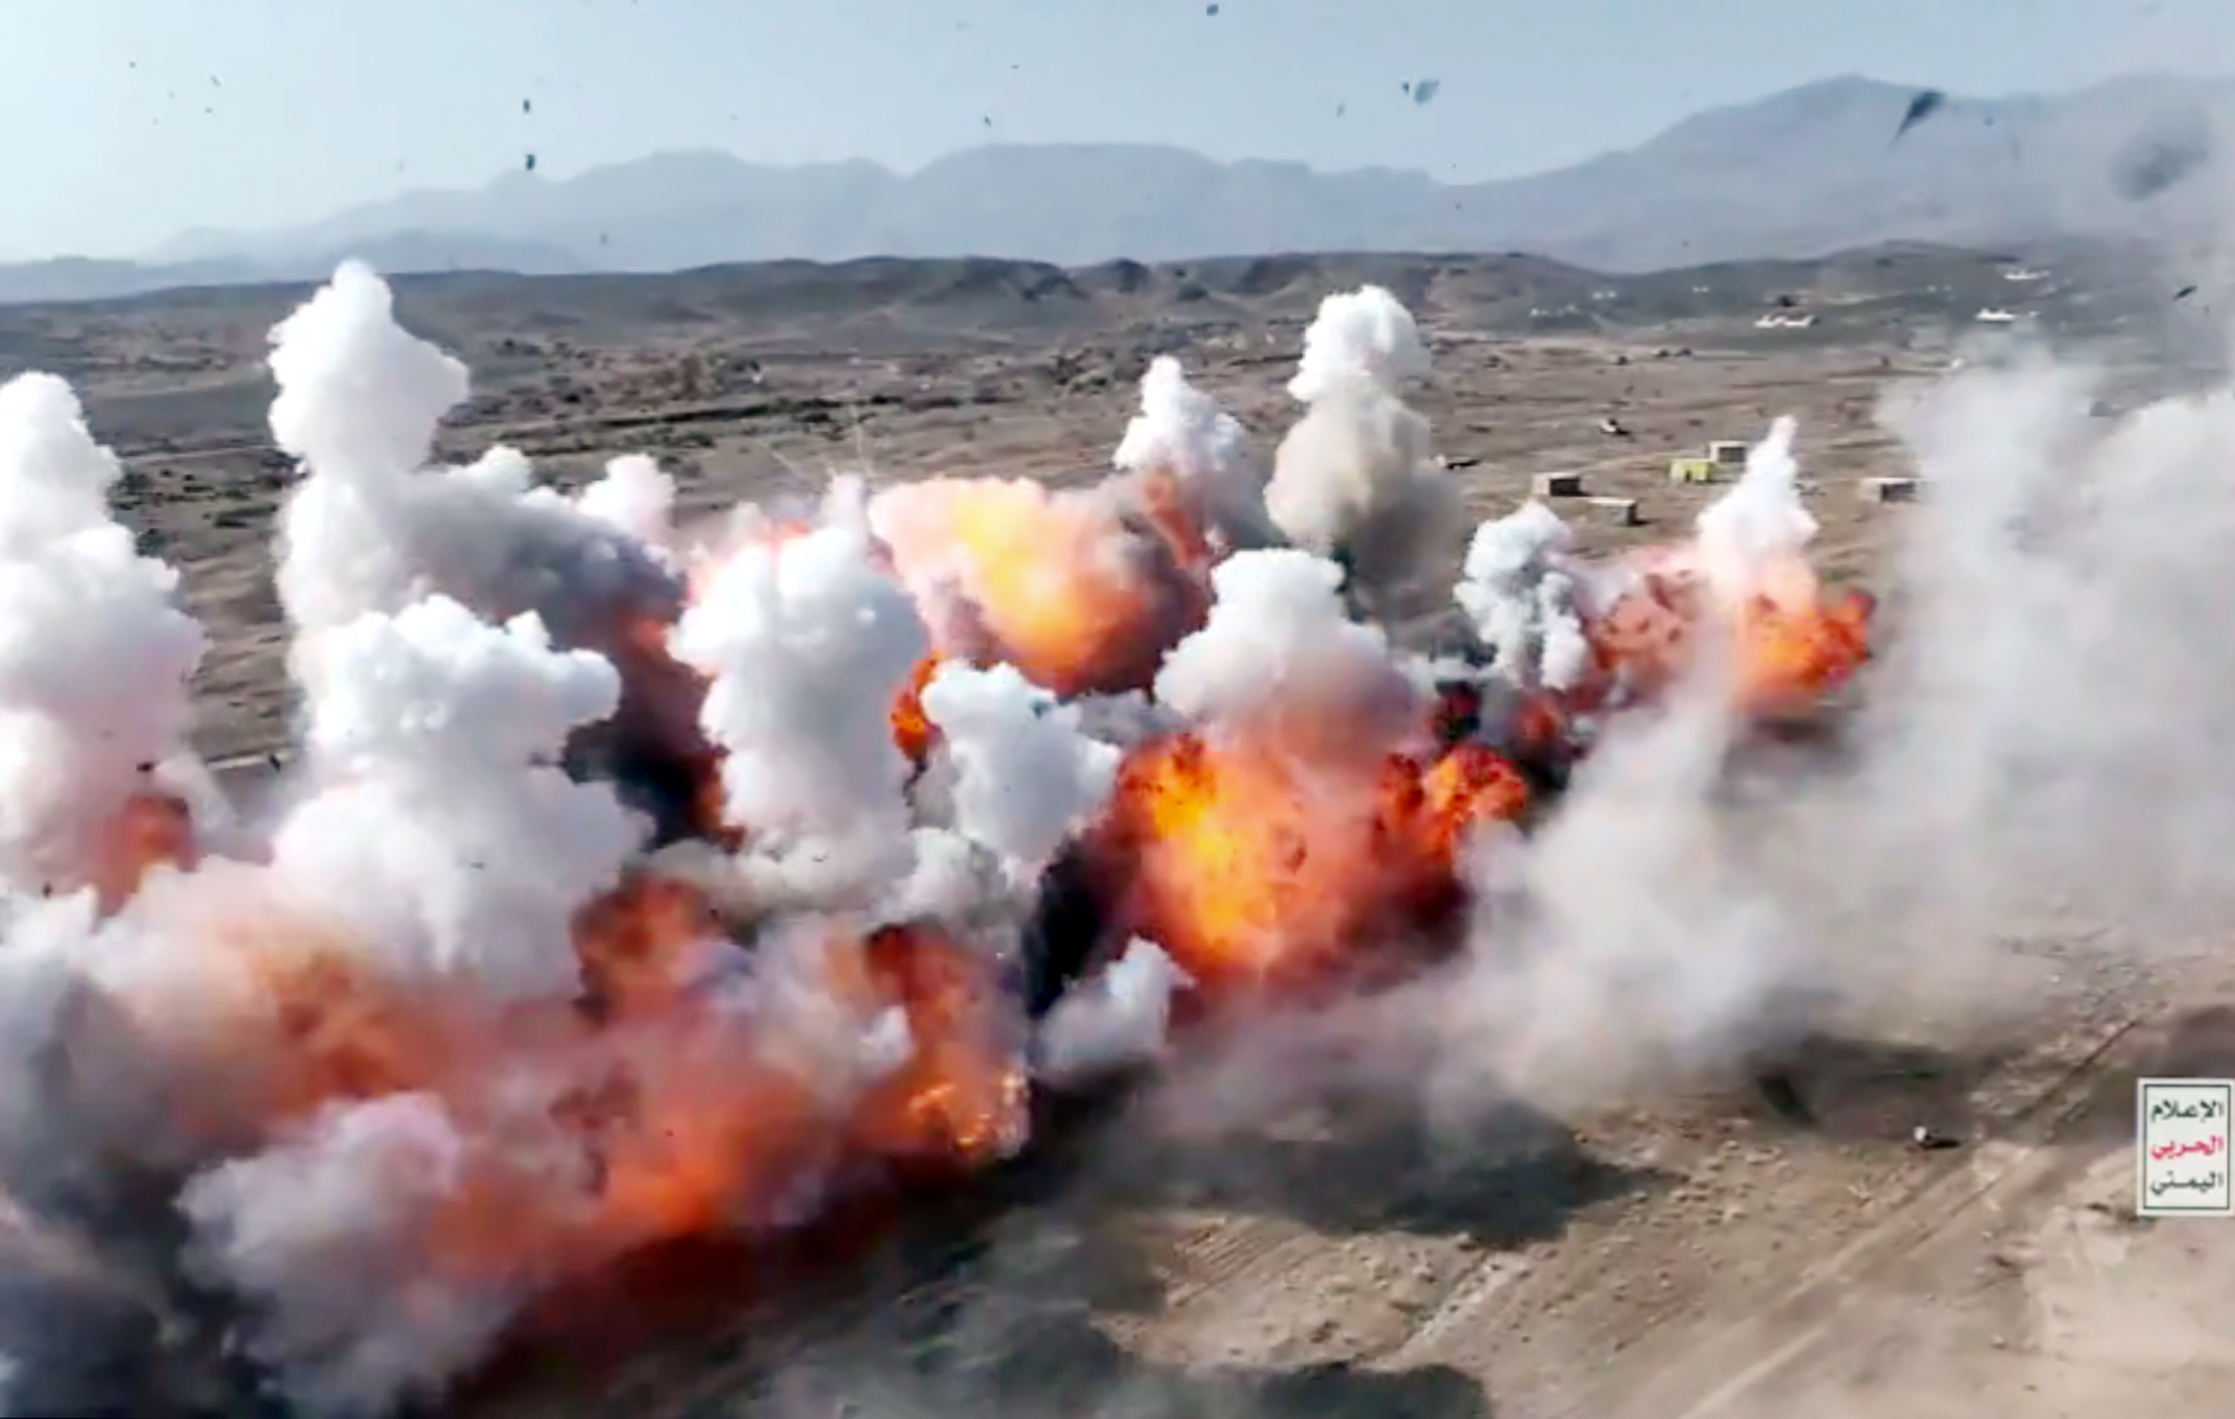 Veröffentlichtes Filmmaterial zeigt schwere Explosionen im Rahmen eines Trainings